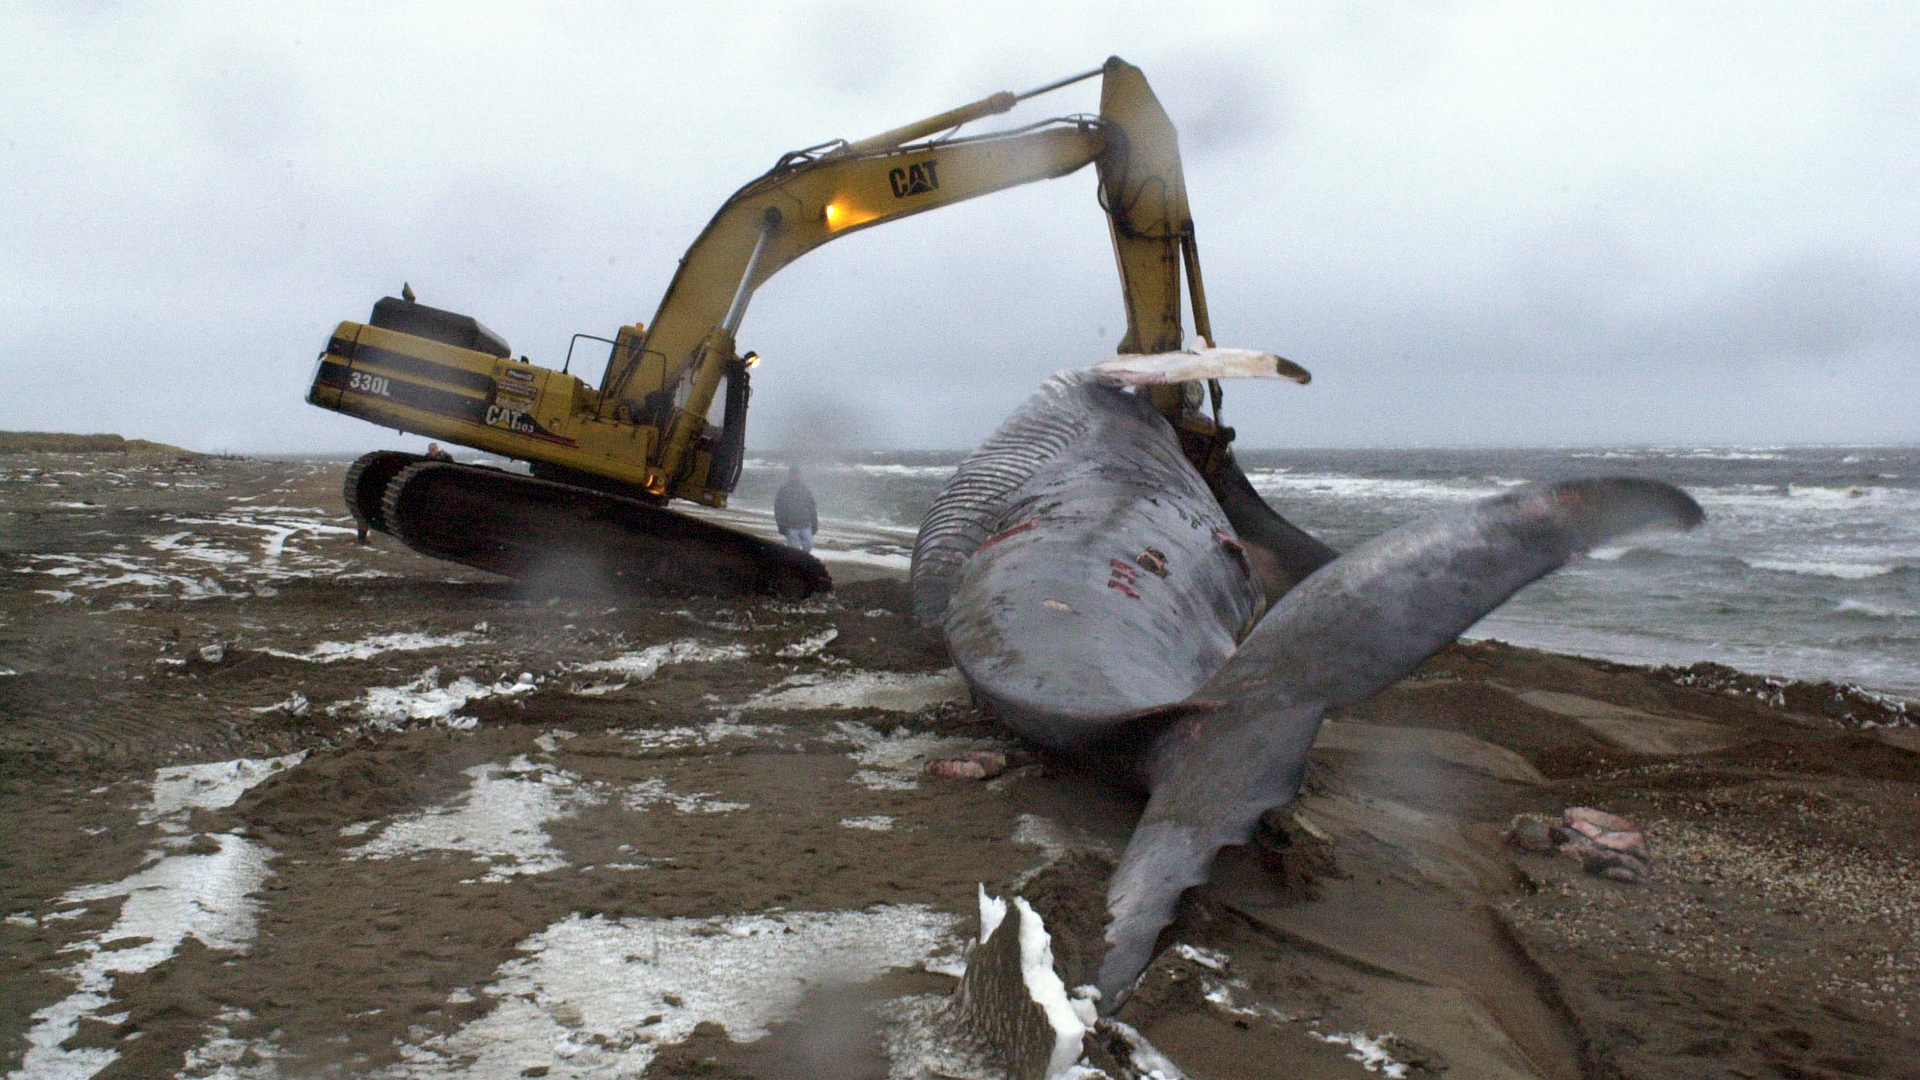 Une grue tente de retourner la baleine. Le derrière de la grue se soulève à cause du poids de l’animal.